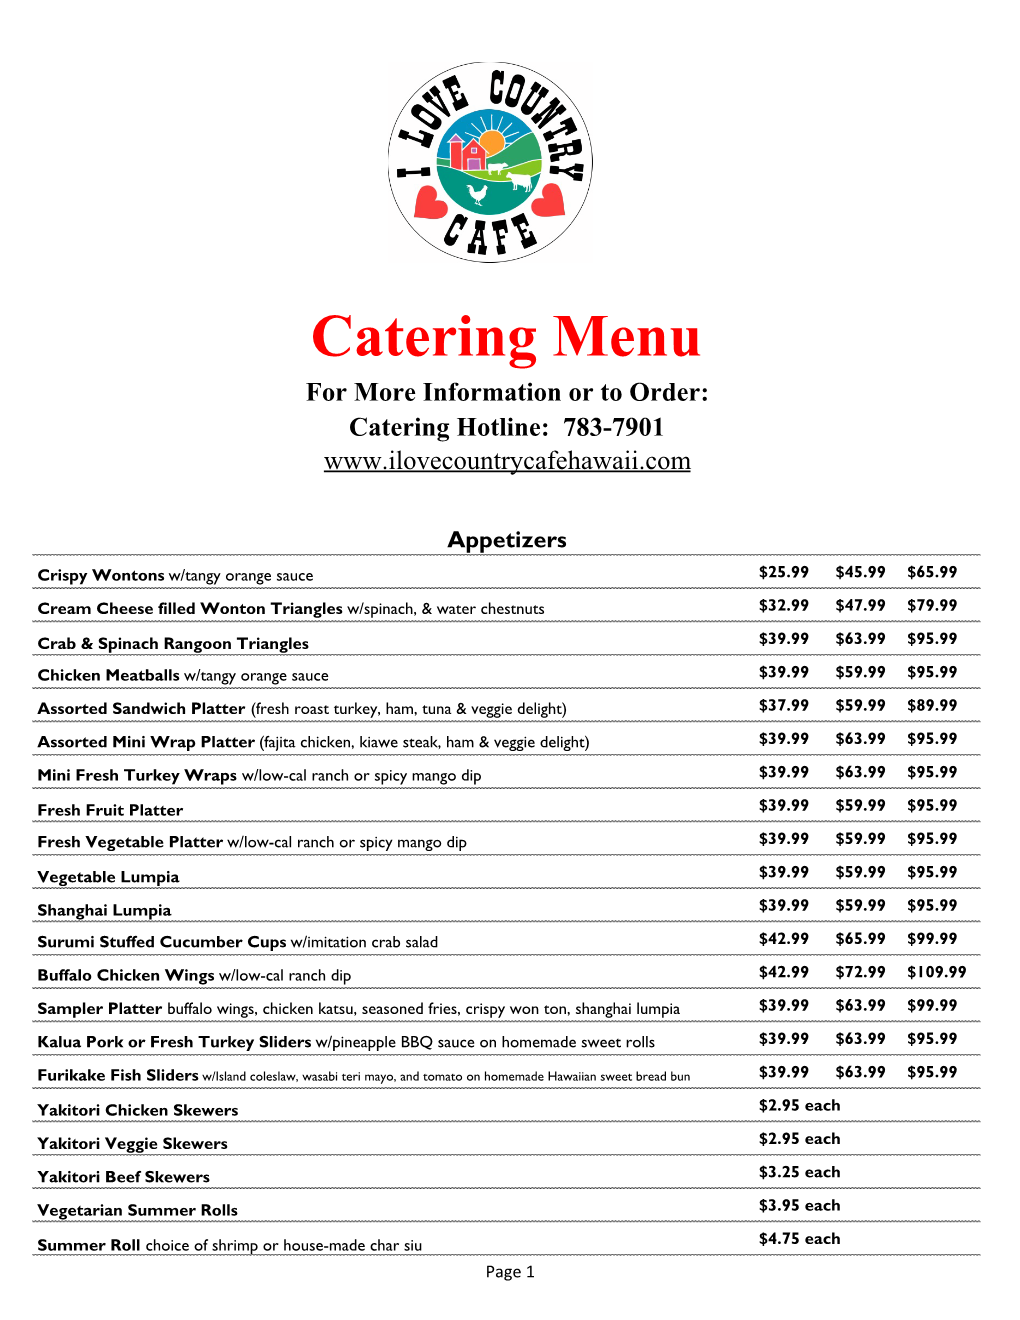 Catering Menu 090316